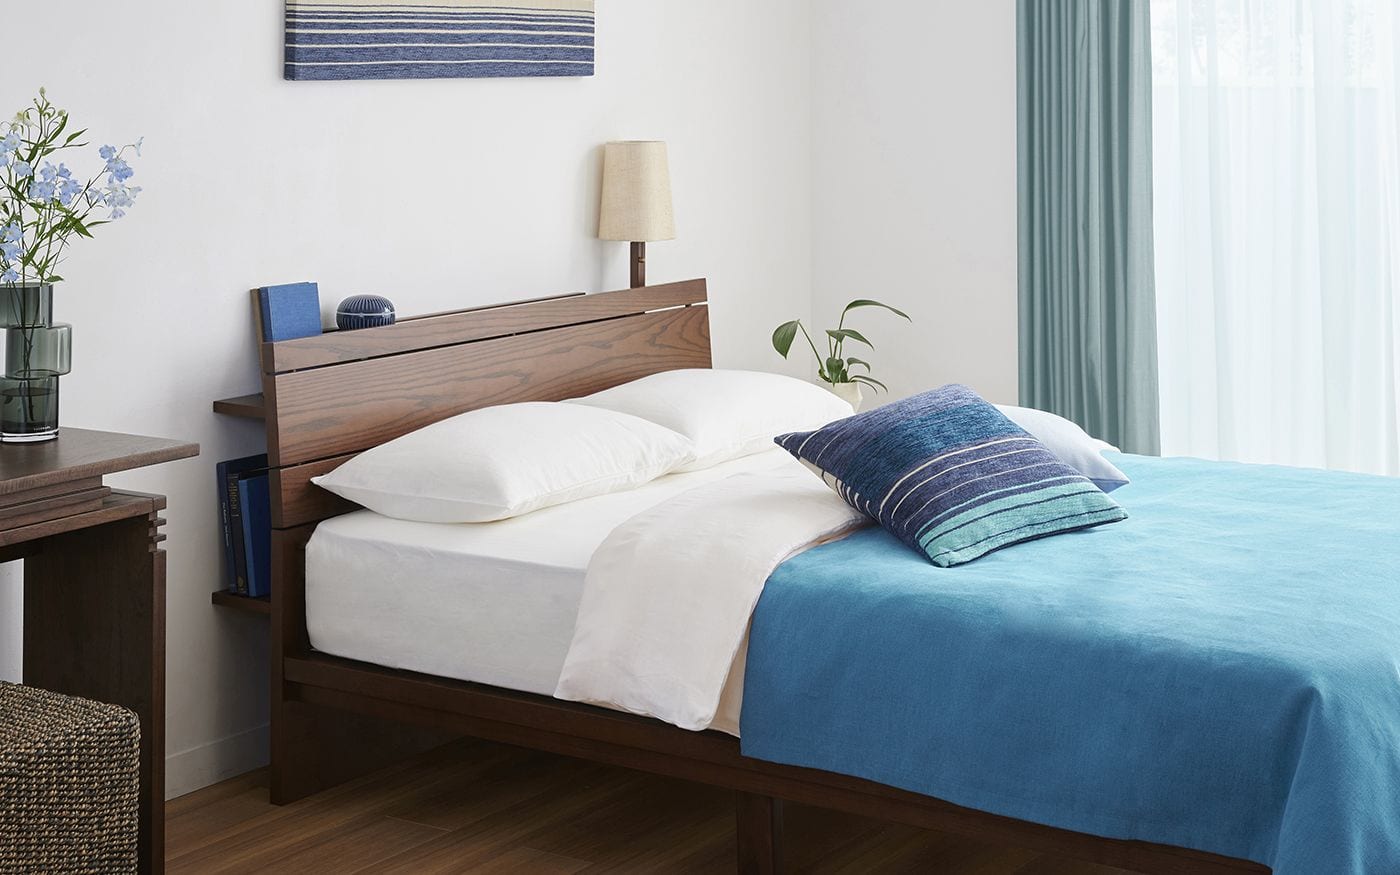 ムク・ベッド特集 -無垢材の癒しと温もりで快眠しやすいベッド | a